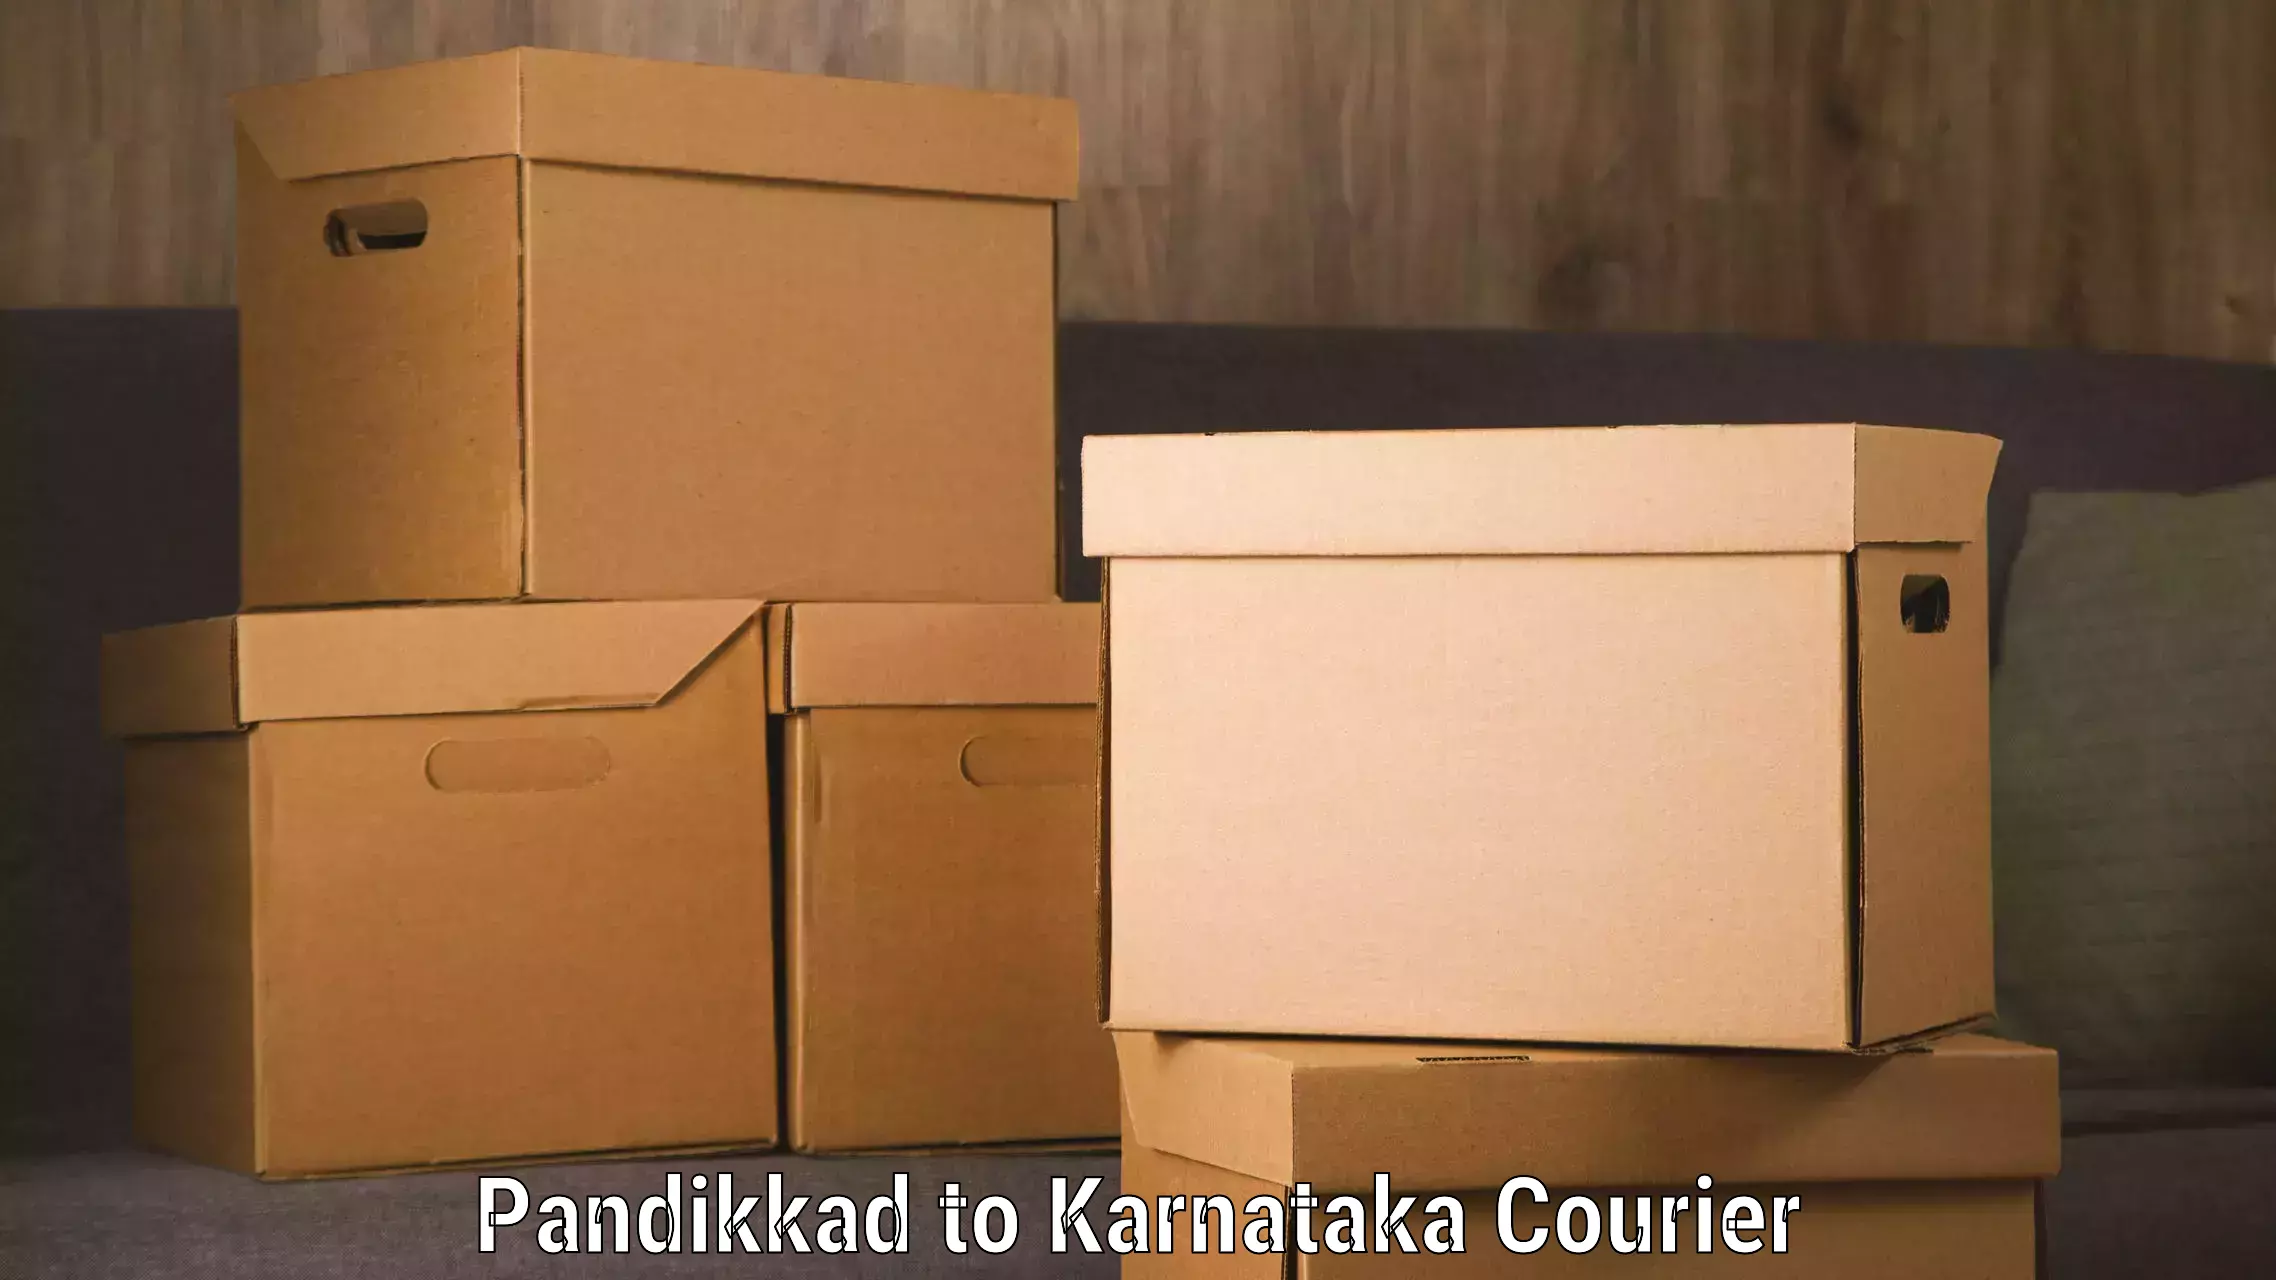 International courier networks Pandikkad to Savanur